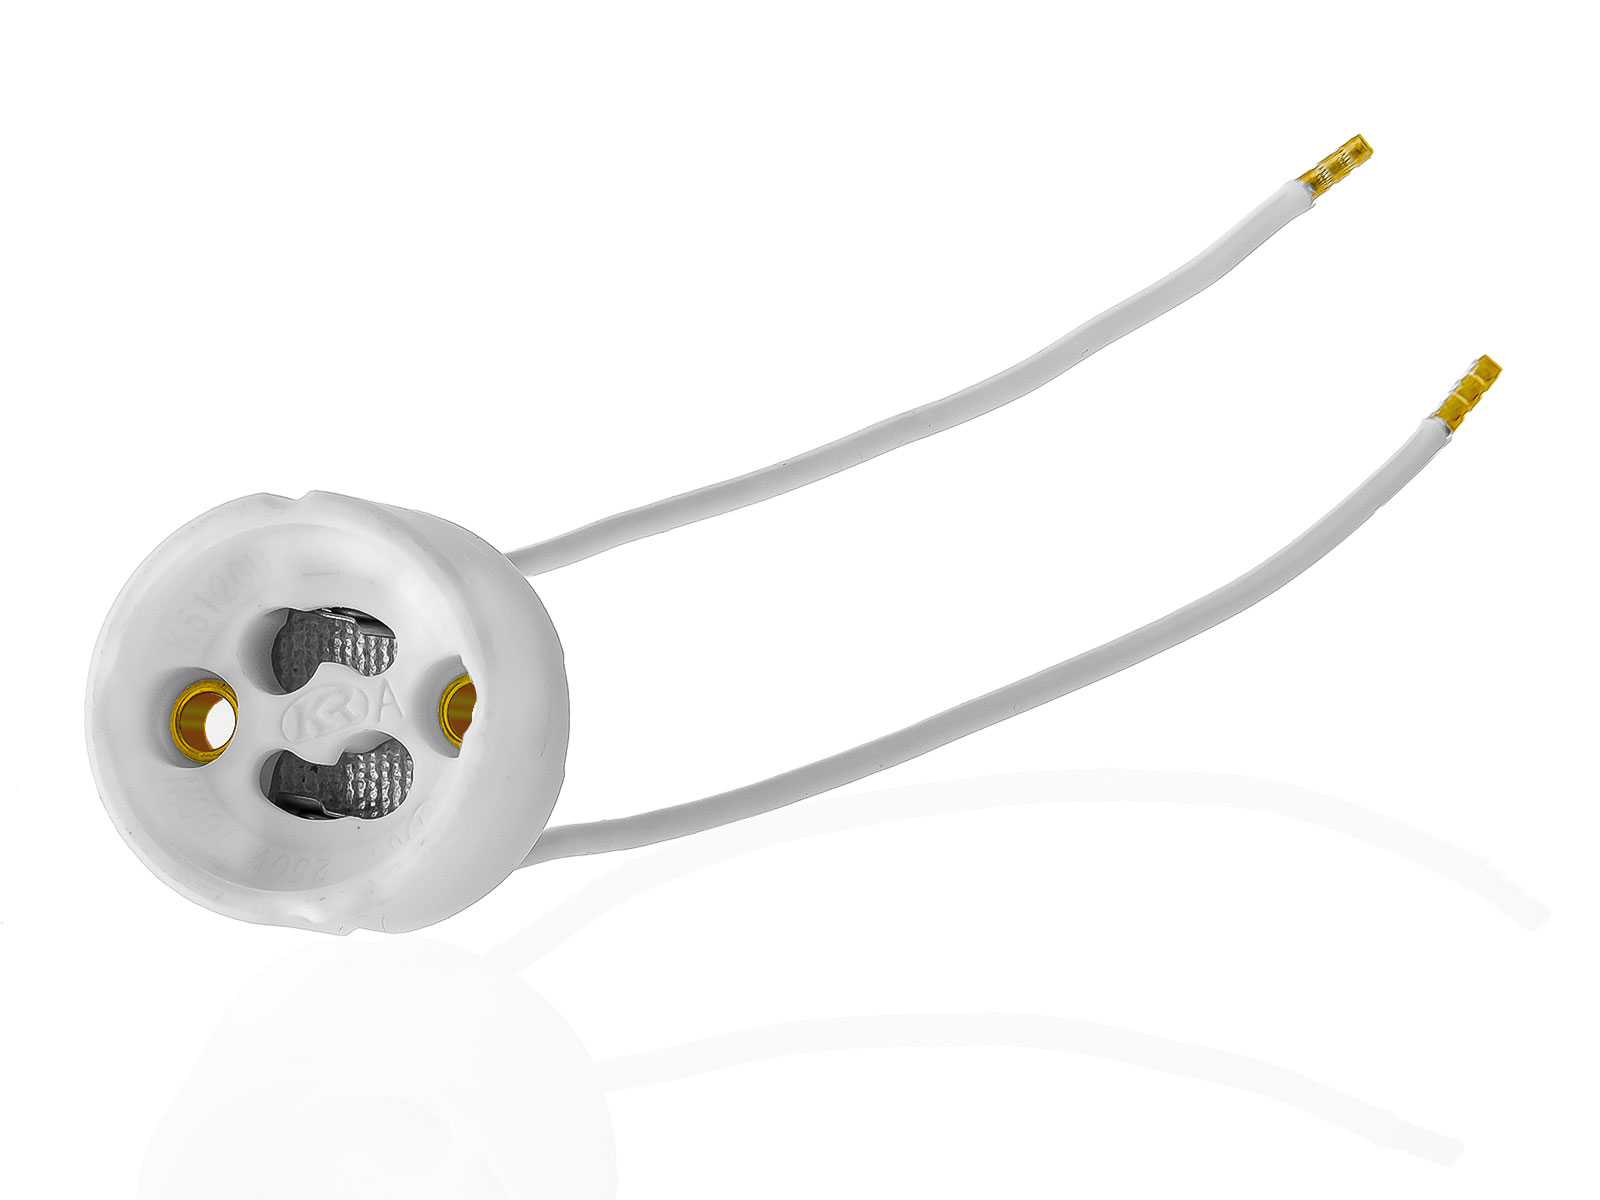 20x GU10 Lampenfassung Sockel aus Keramik mit Qualitäts Silikonkabel für LED und Halogenleuchtmittel XmediaSat GU10.S20 weiß